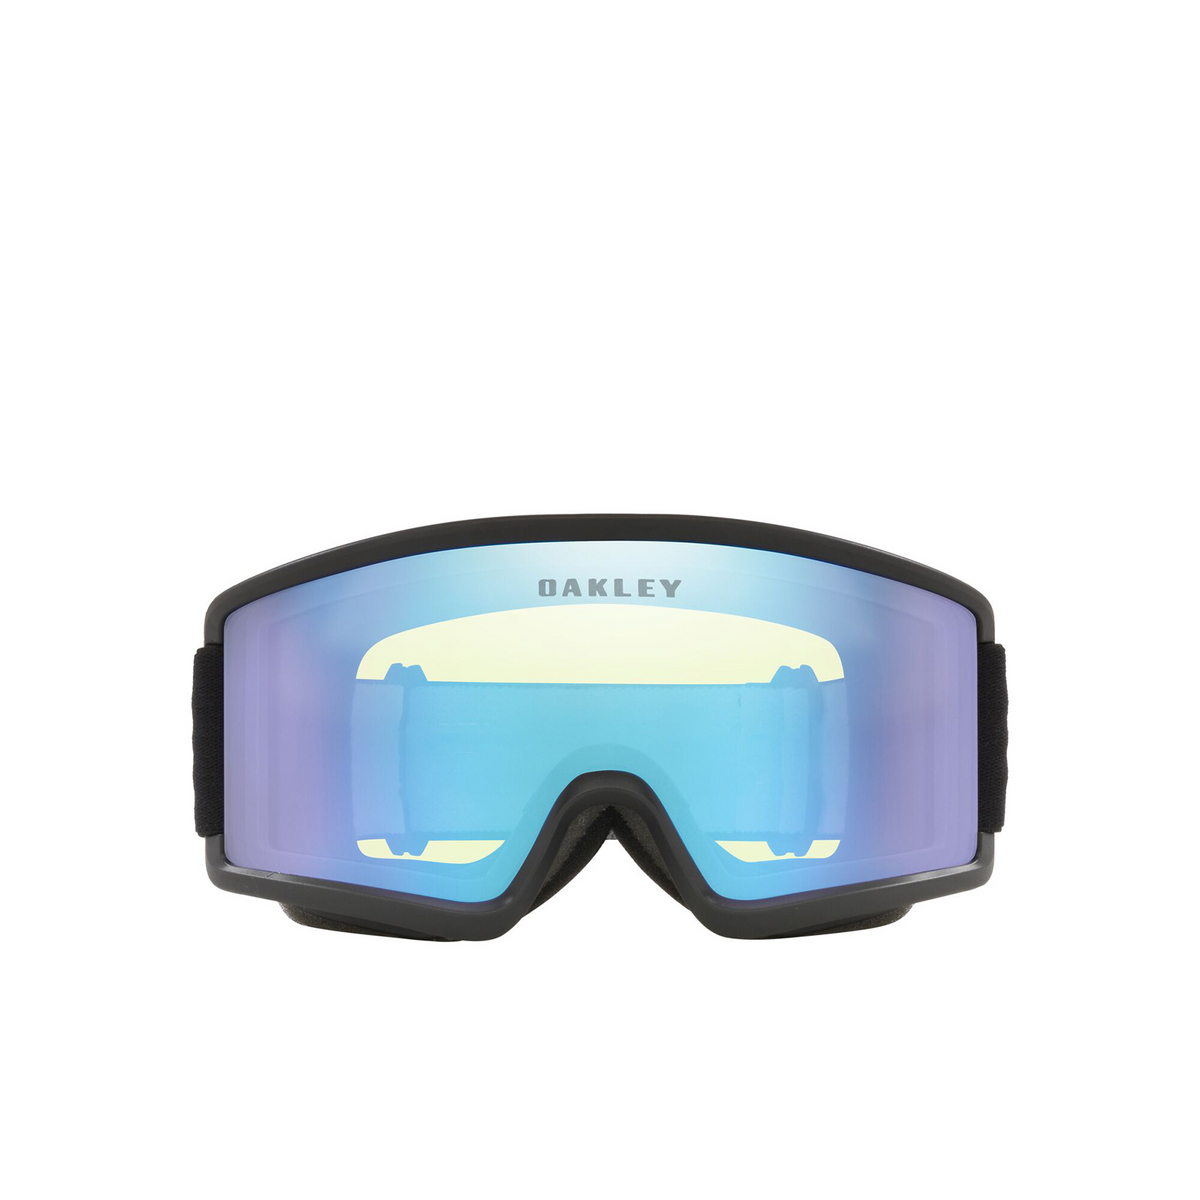 Oakley TARGET LINE S Sunglasses 712204 Matte Black - front view